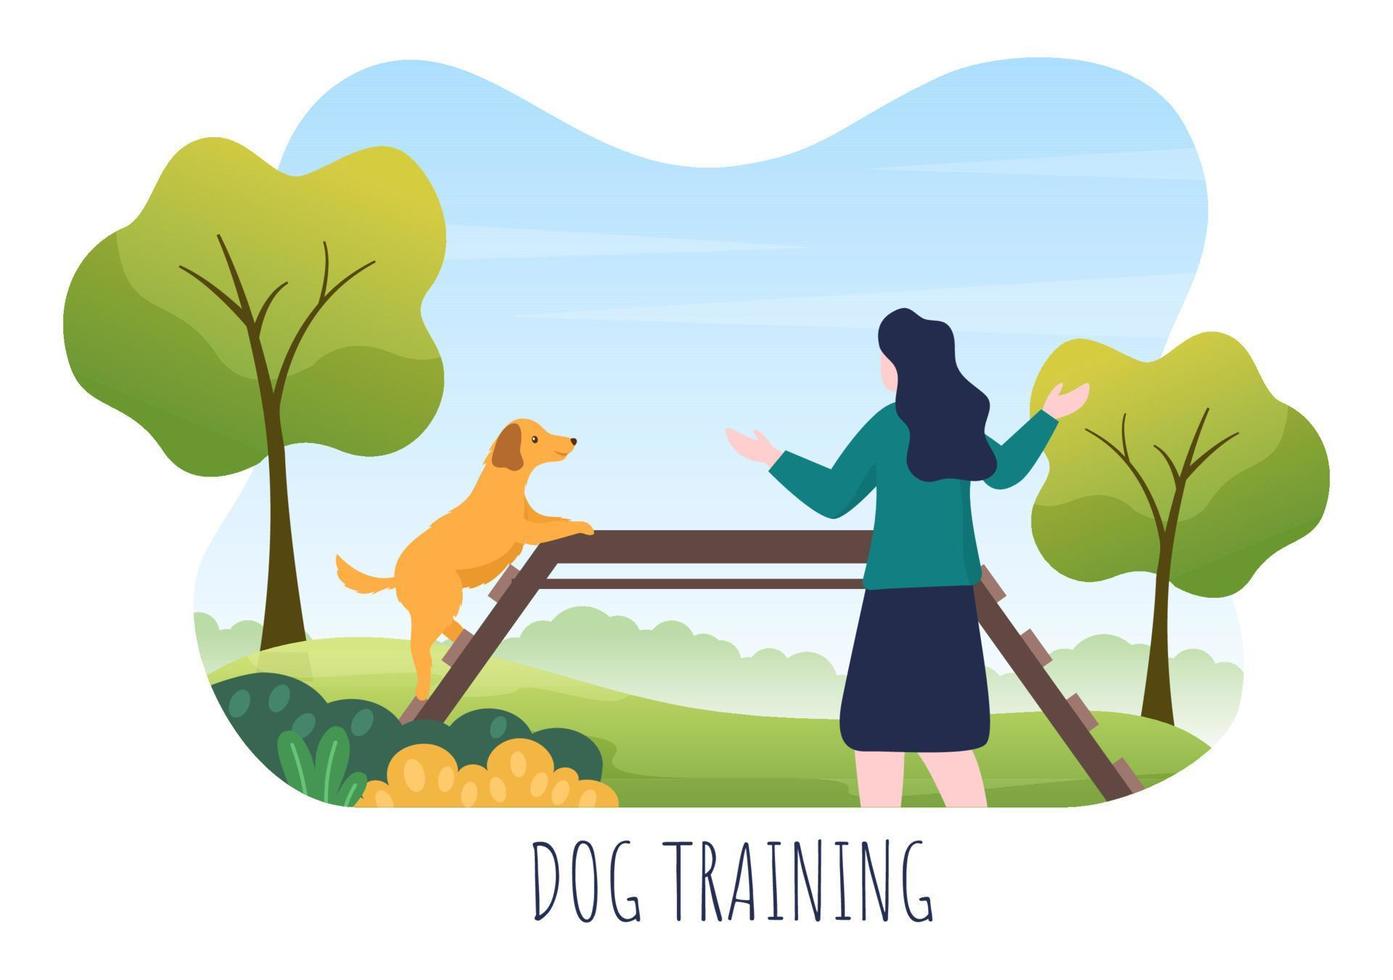 centro di addestramento per cani al parco giochi con istruttore che insegna agli animali domestici o gioca per trucchi e abilità di salto nell'illustrazione piana del fondo del fumetto vettore